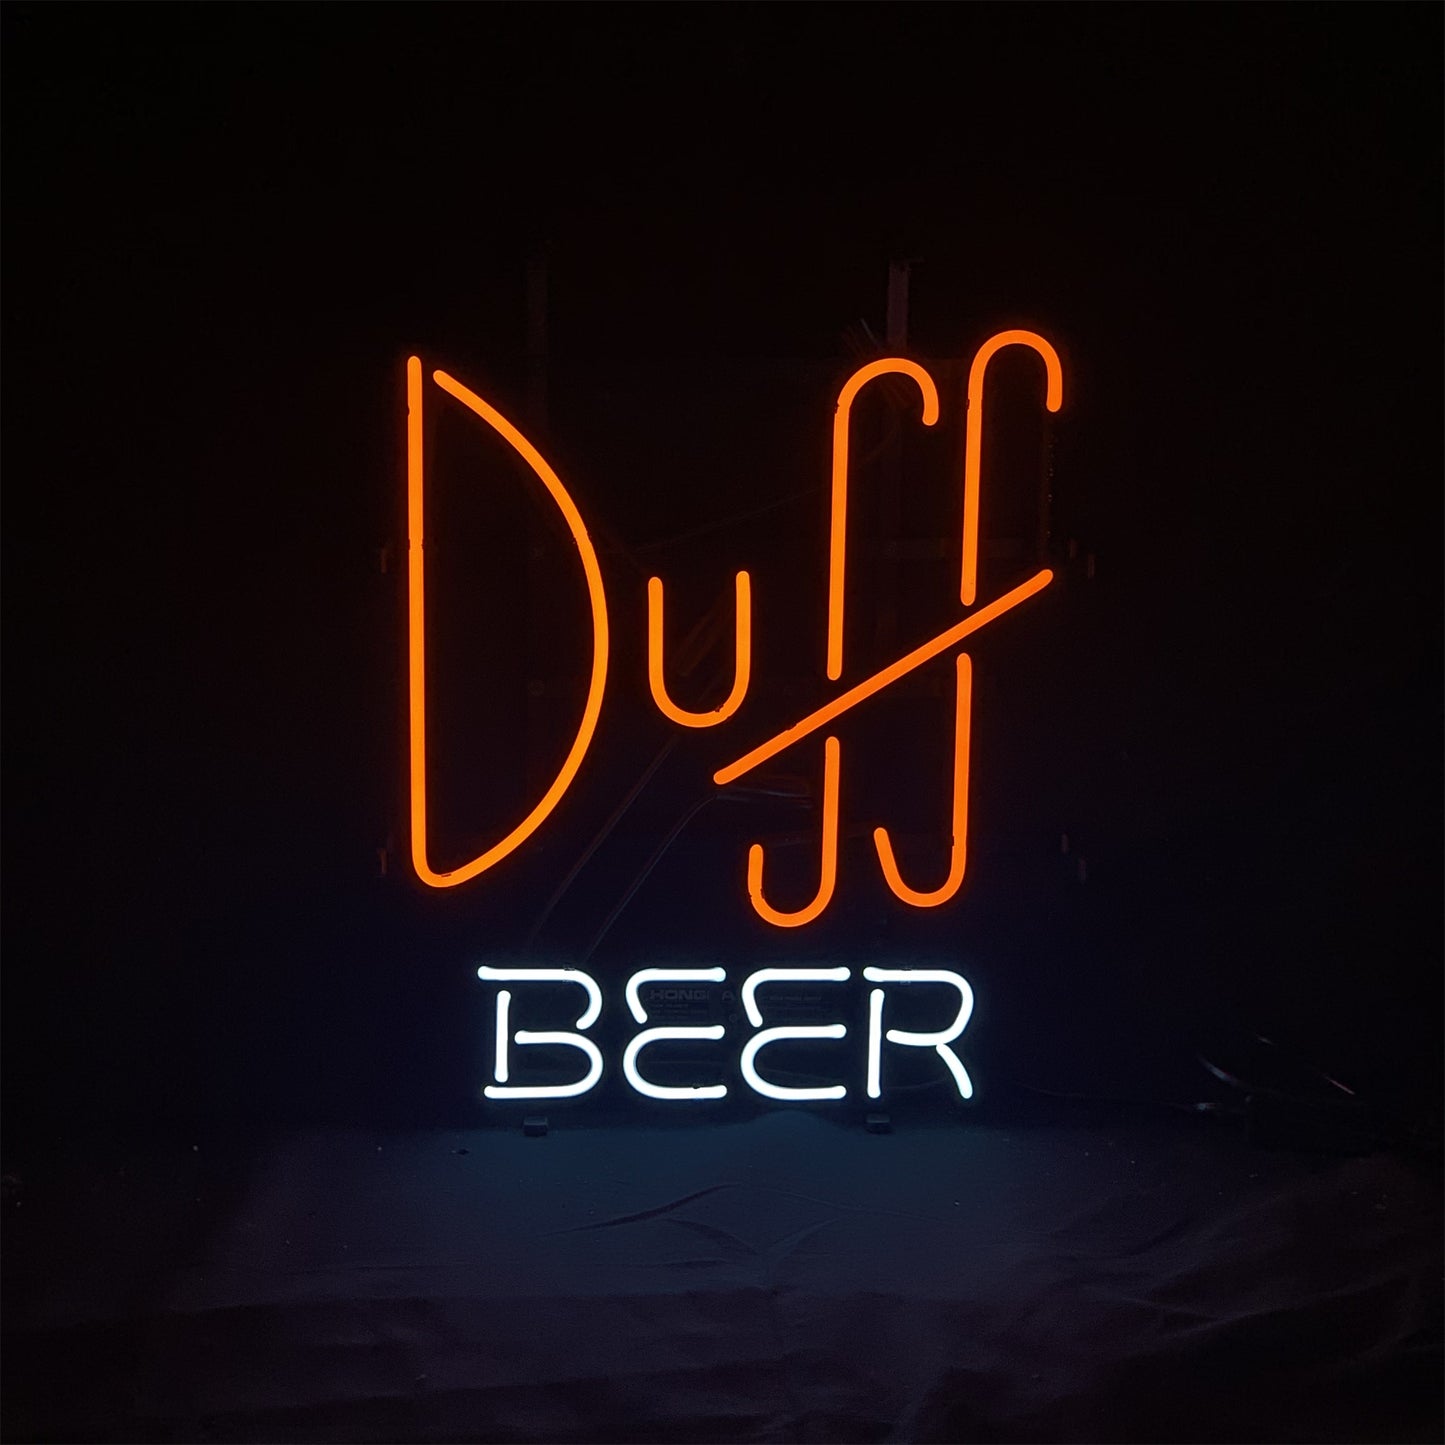 Dvff Beer